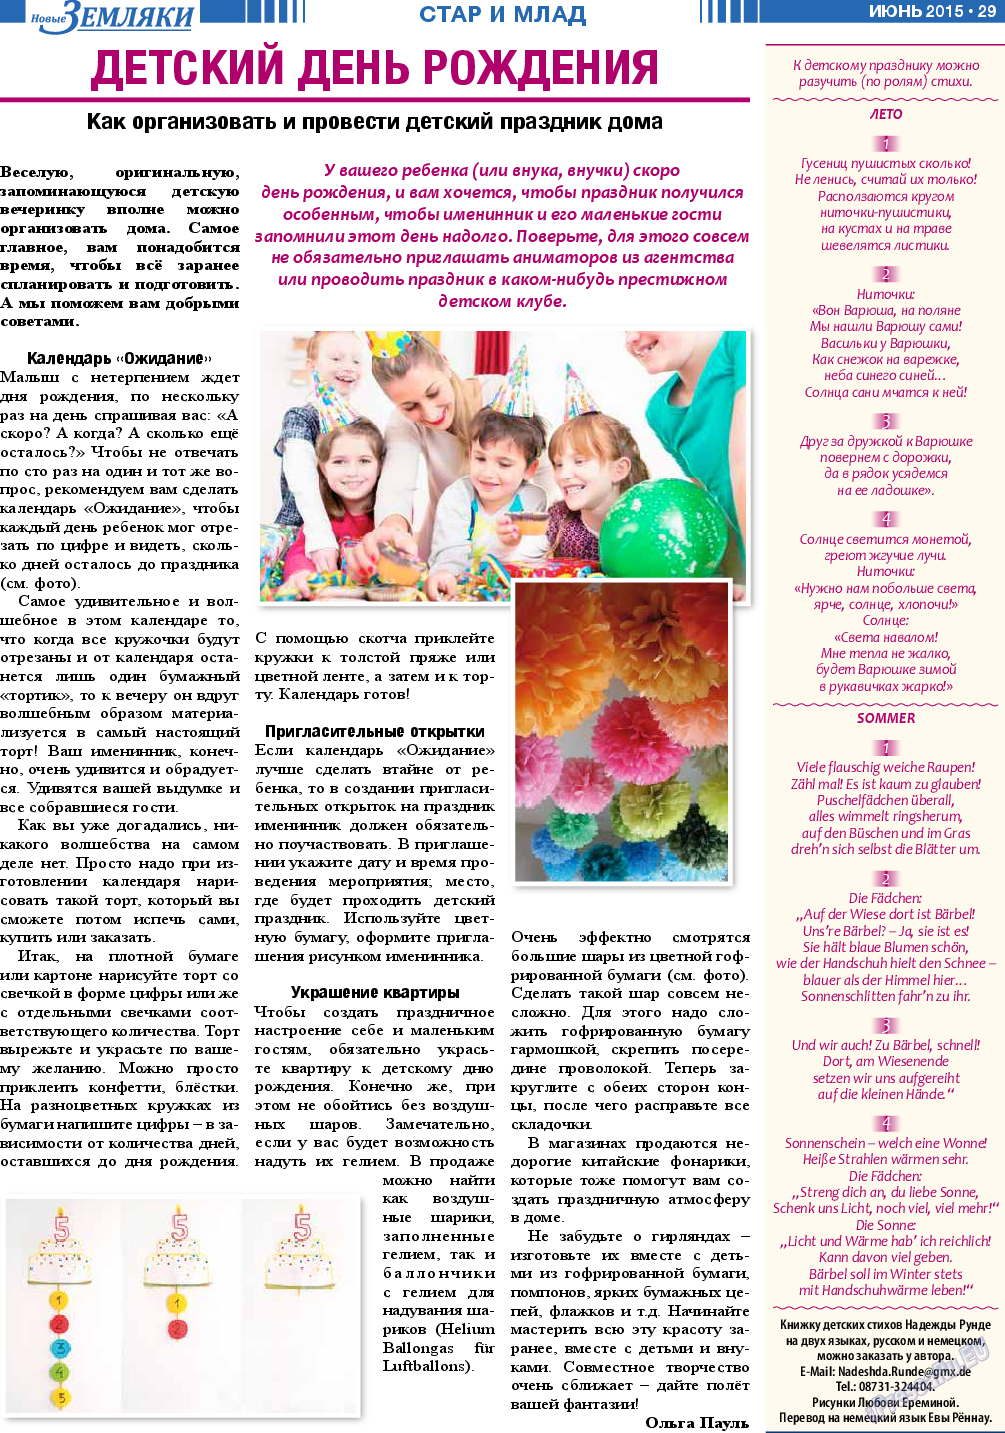 Новые Земляки, газета. 2015 №6 стр.29